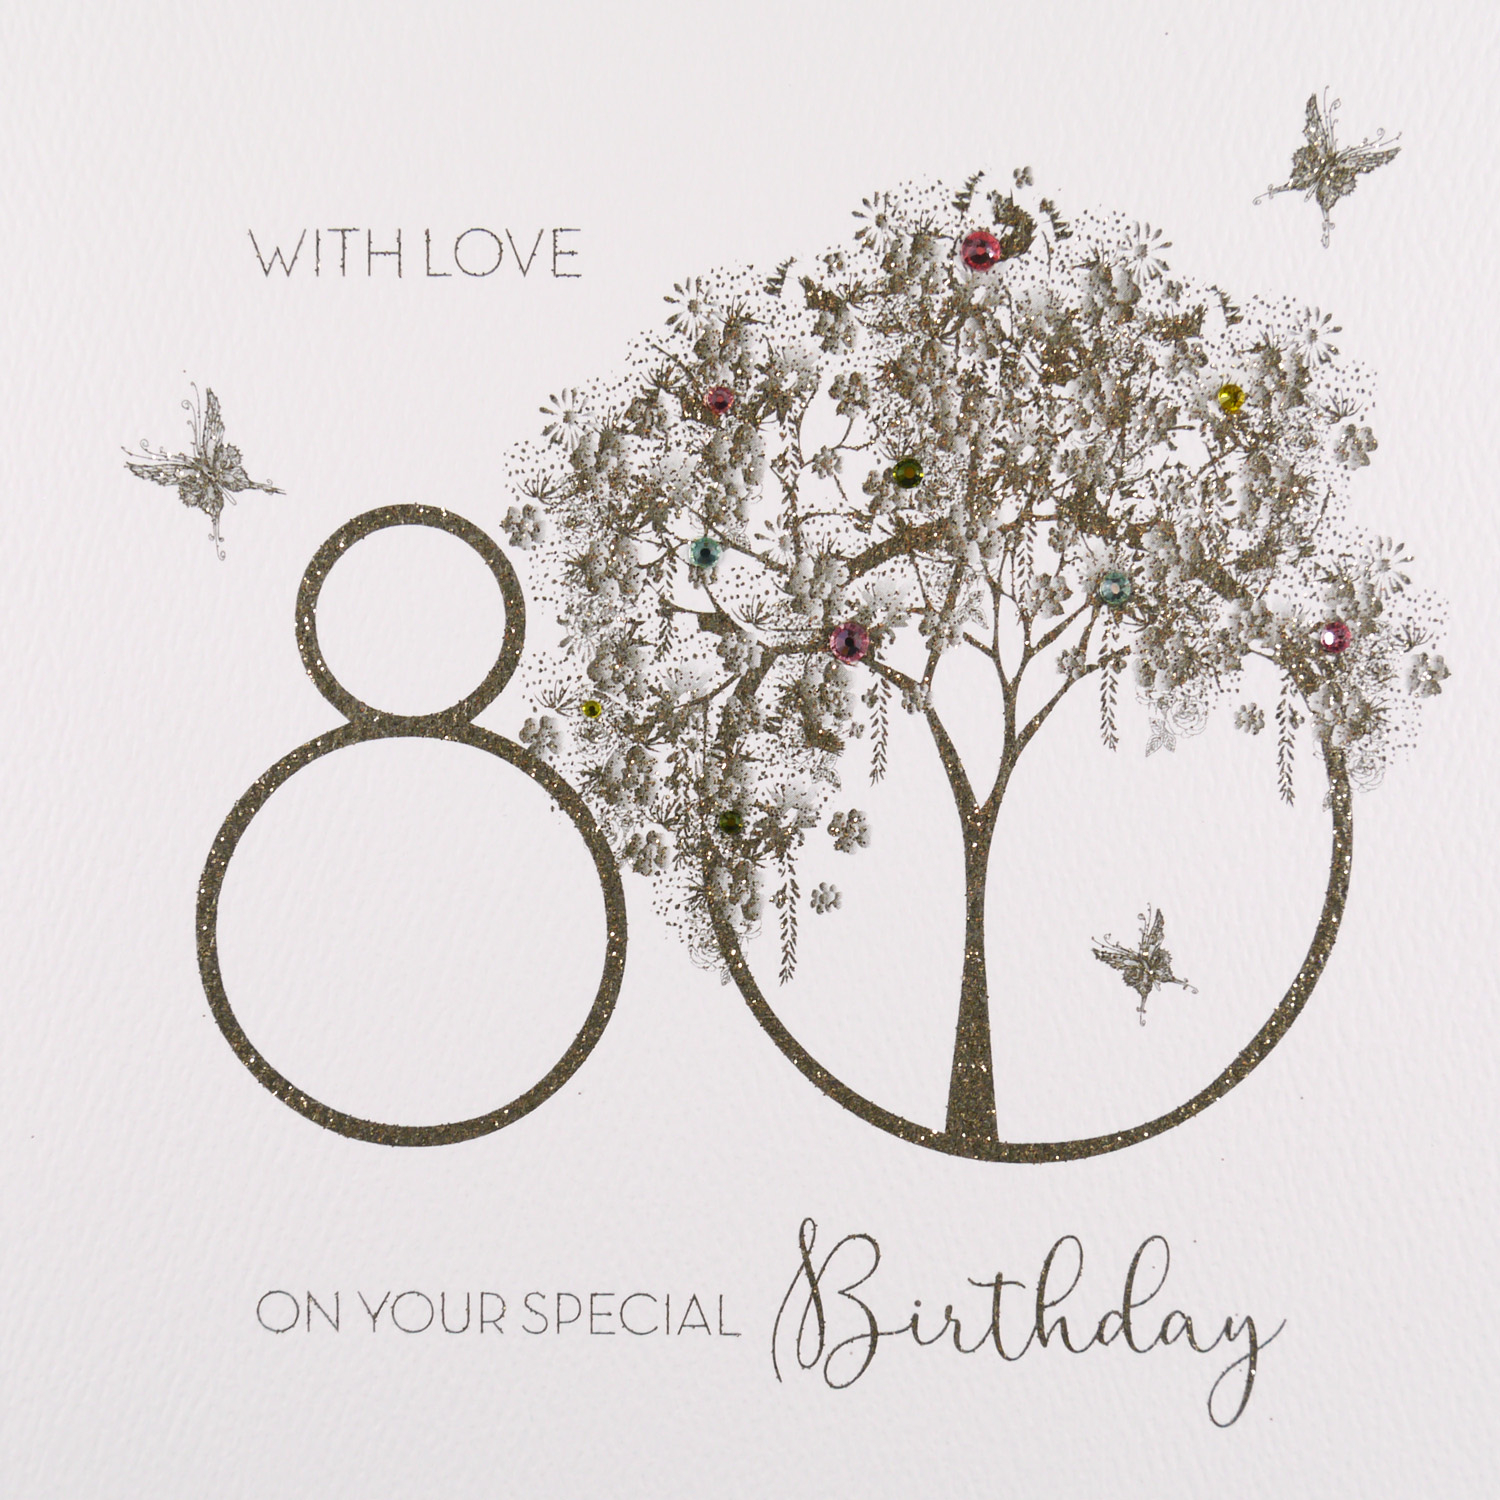 Handmade 80Th Birthday Card Ideas With Love On Your Special Birthday Handmade 80th Birthday Card Gs26